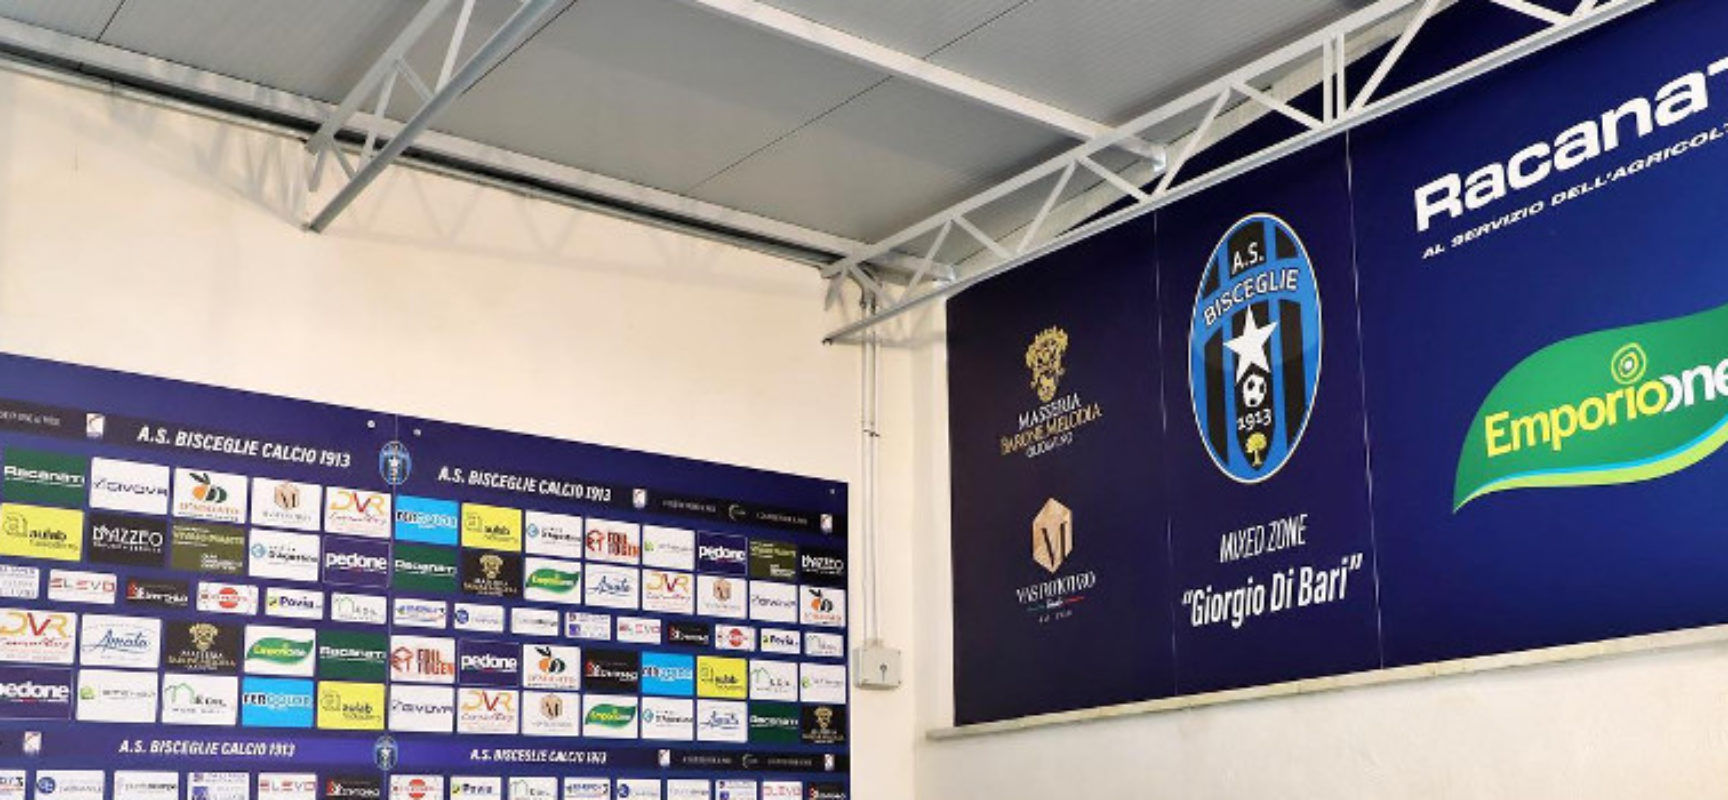 Bisceglie Calcio, inaugurata la mixed zone “Giorgio Di Bari”